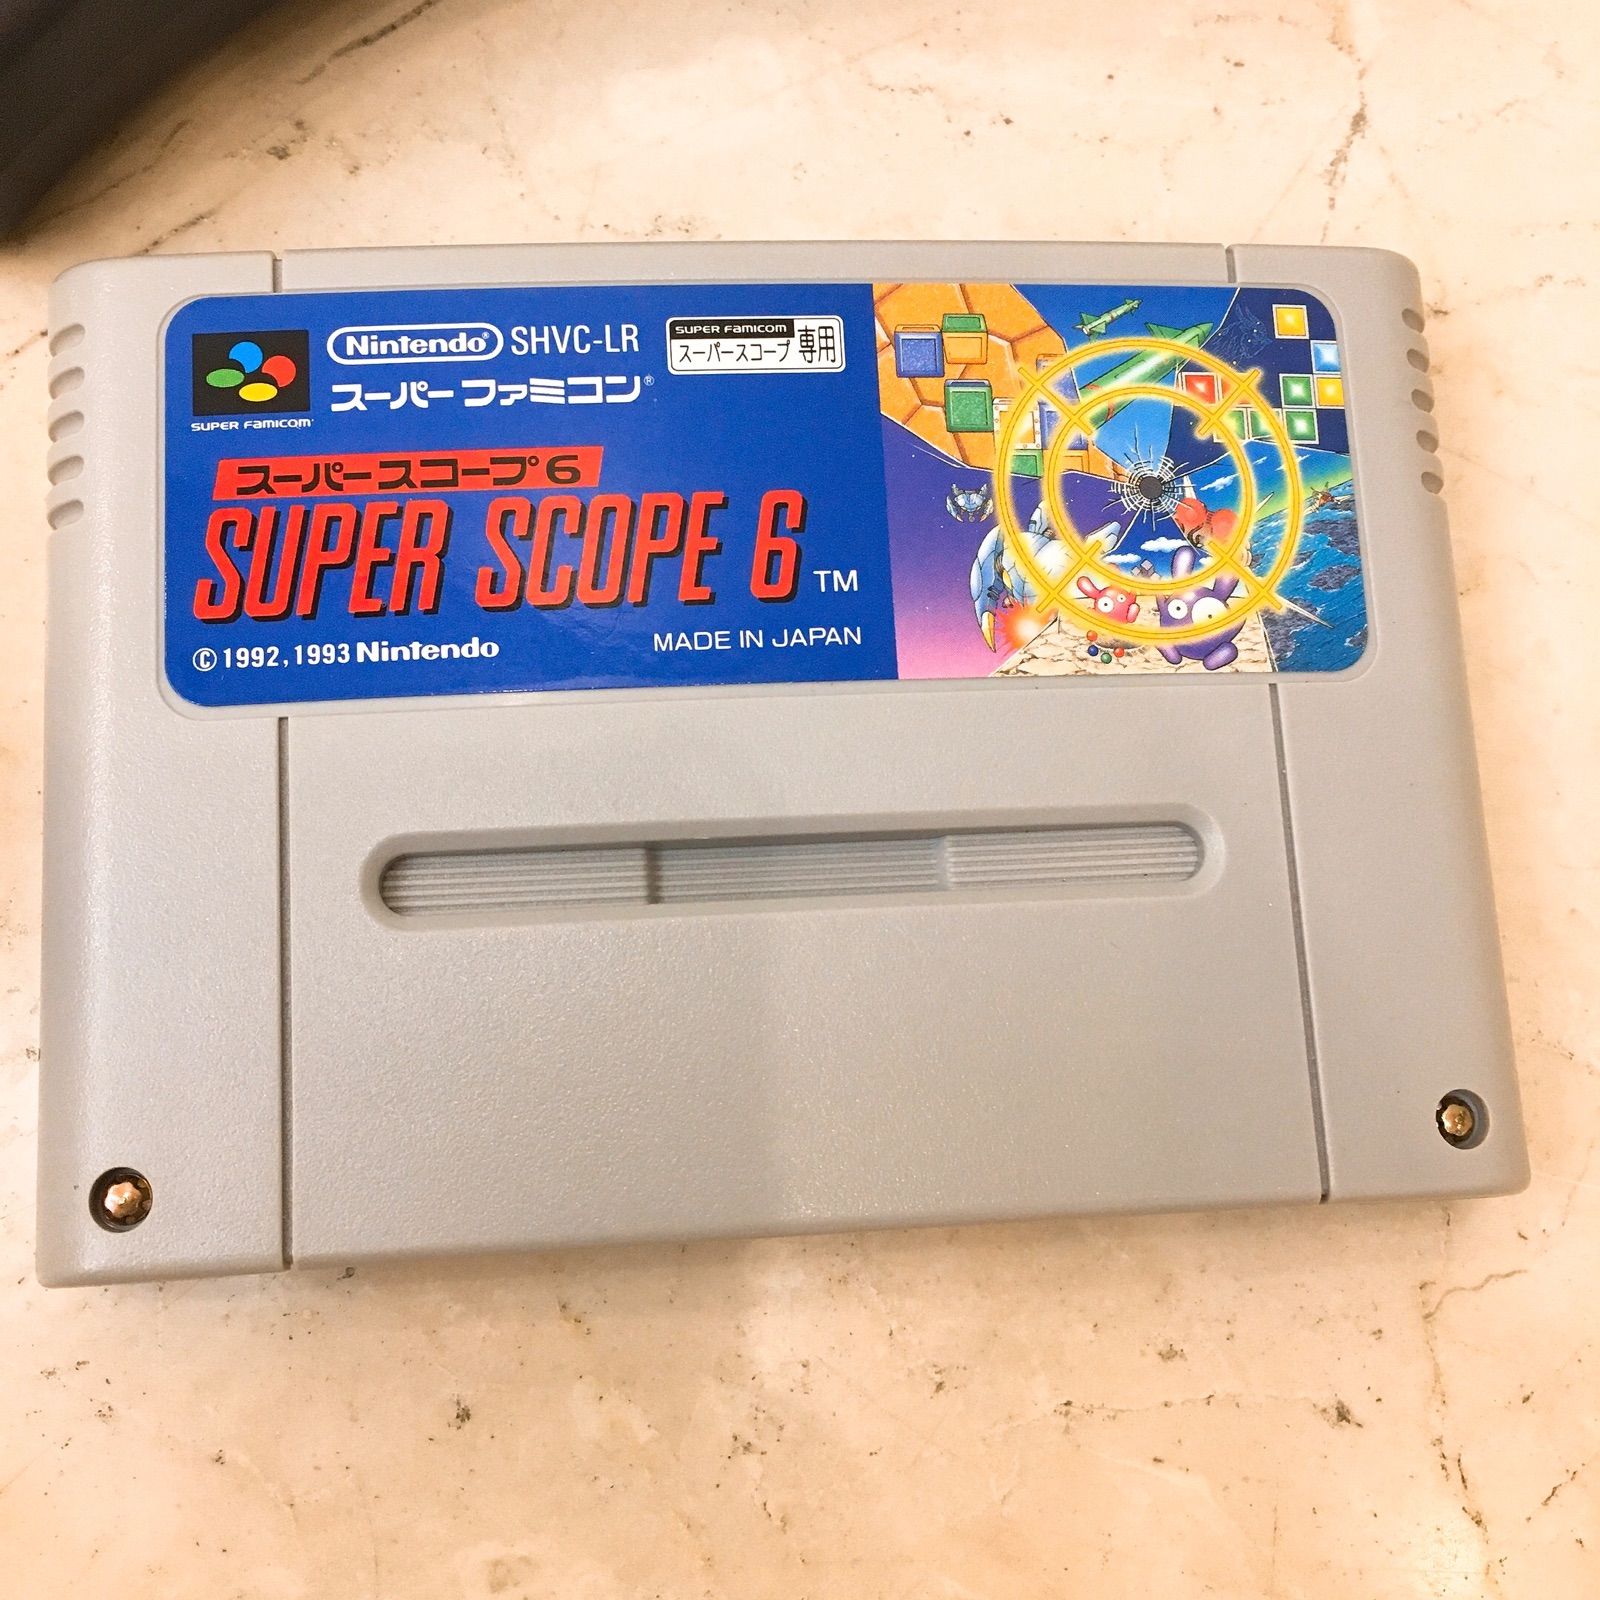 スーパースコープ スーパーファミコン スーパースコープ6 任天堂